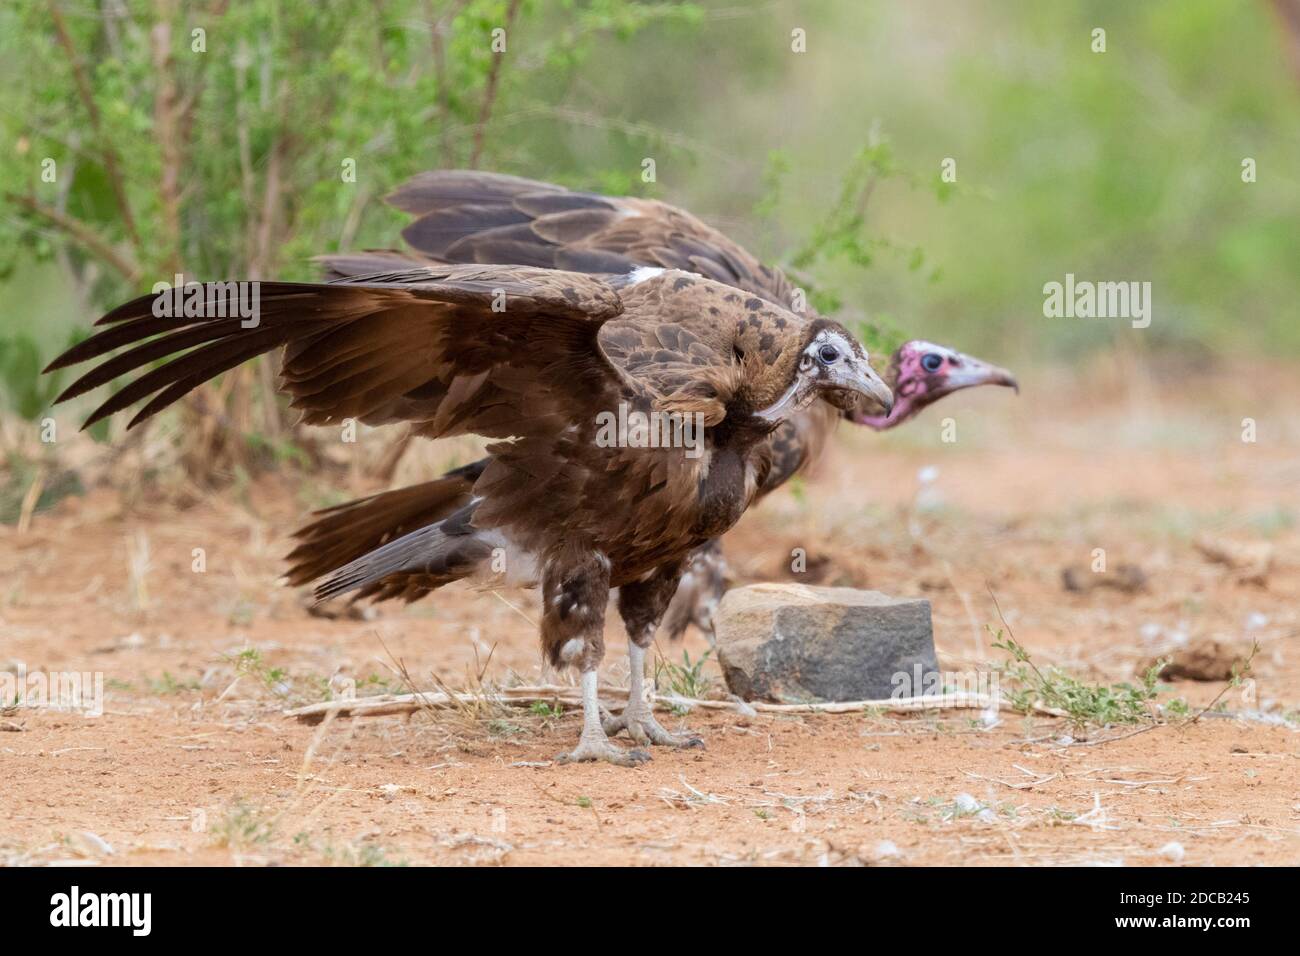 vautour à capuchon (Necrosyrtes monachus), deux juvéniles debout sur le sol avec des ailes ouvertes, Afrique du Sud, Mpumalanga Banque D'Images